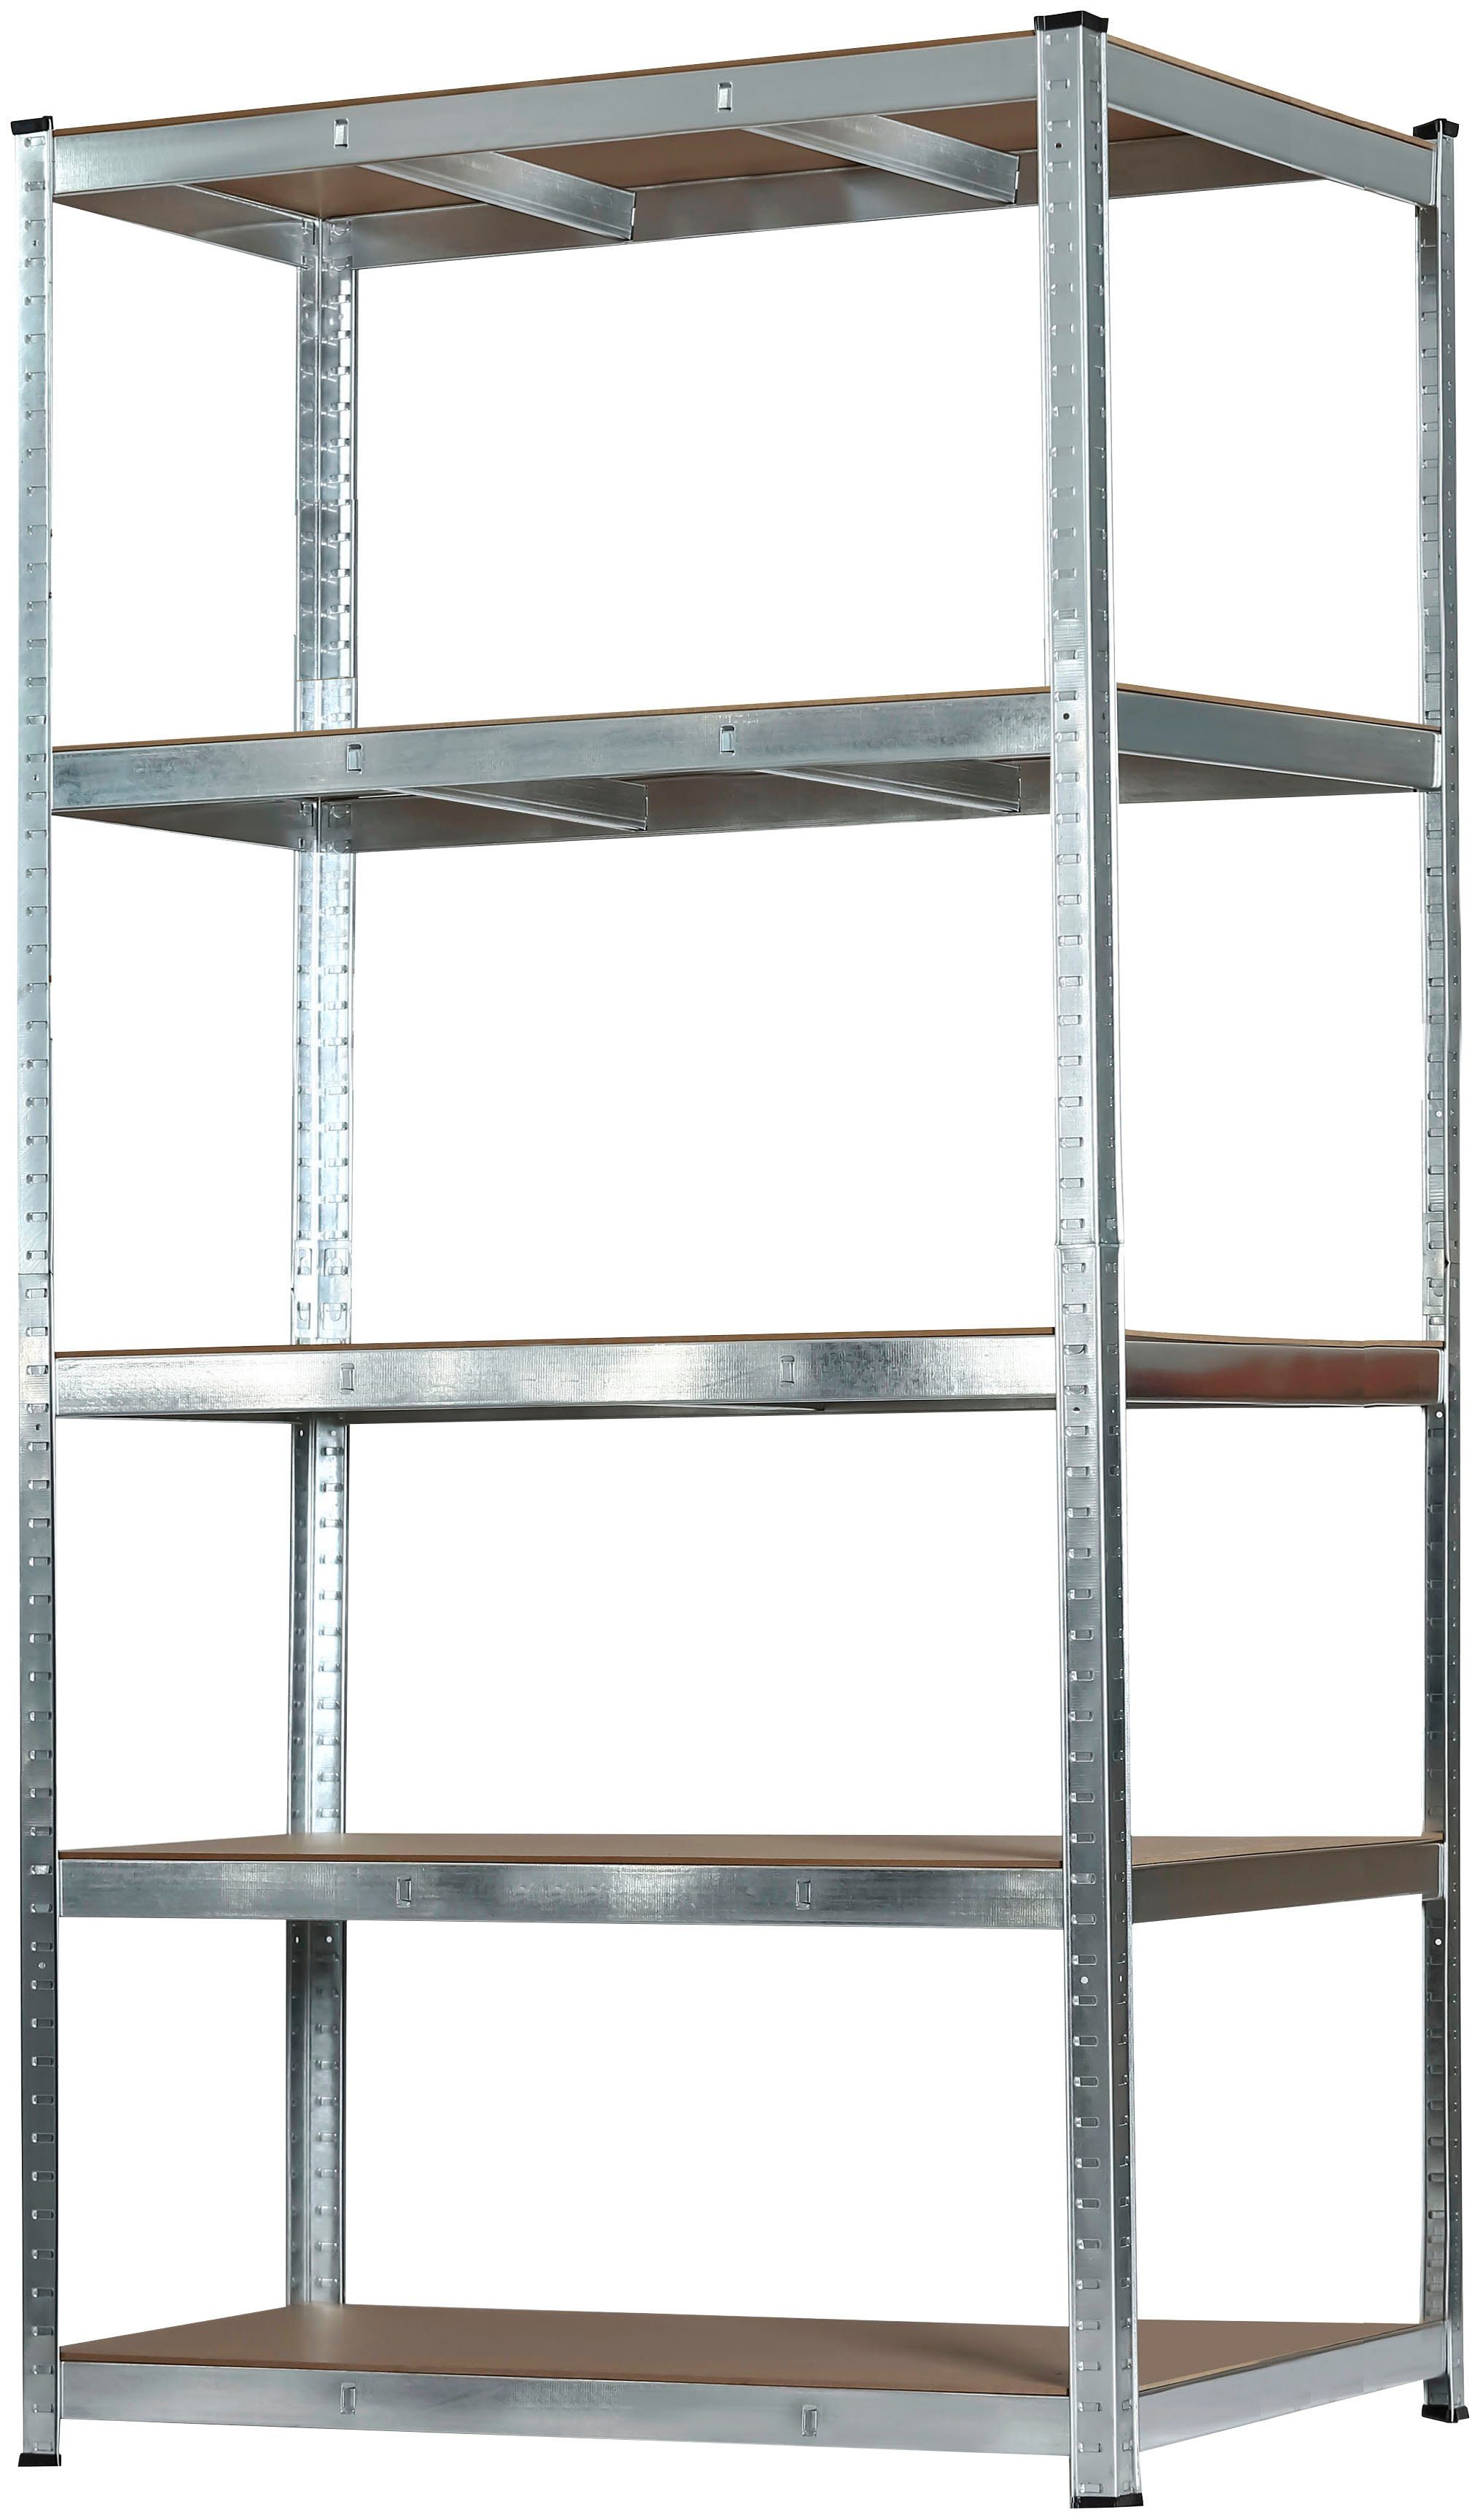 SCHULTE Regalwelt Schwerlastregal Stecksystem-Schwerlastregal S- XL, 5 Böden, Höhe: 180cm, in verschiedenen Ausführungen erhältlich